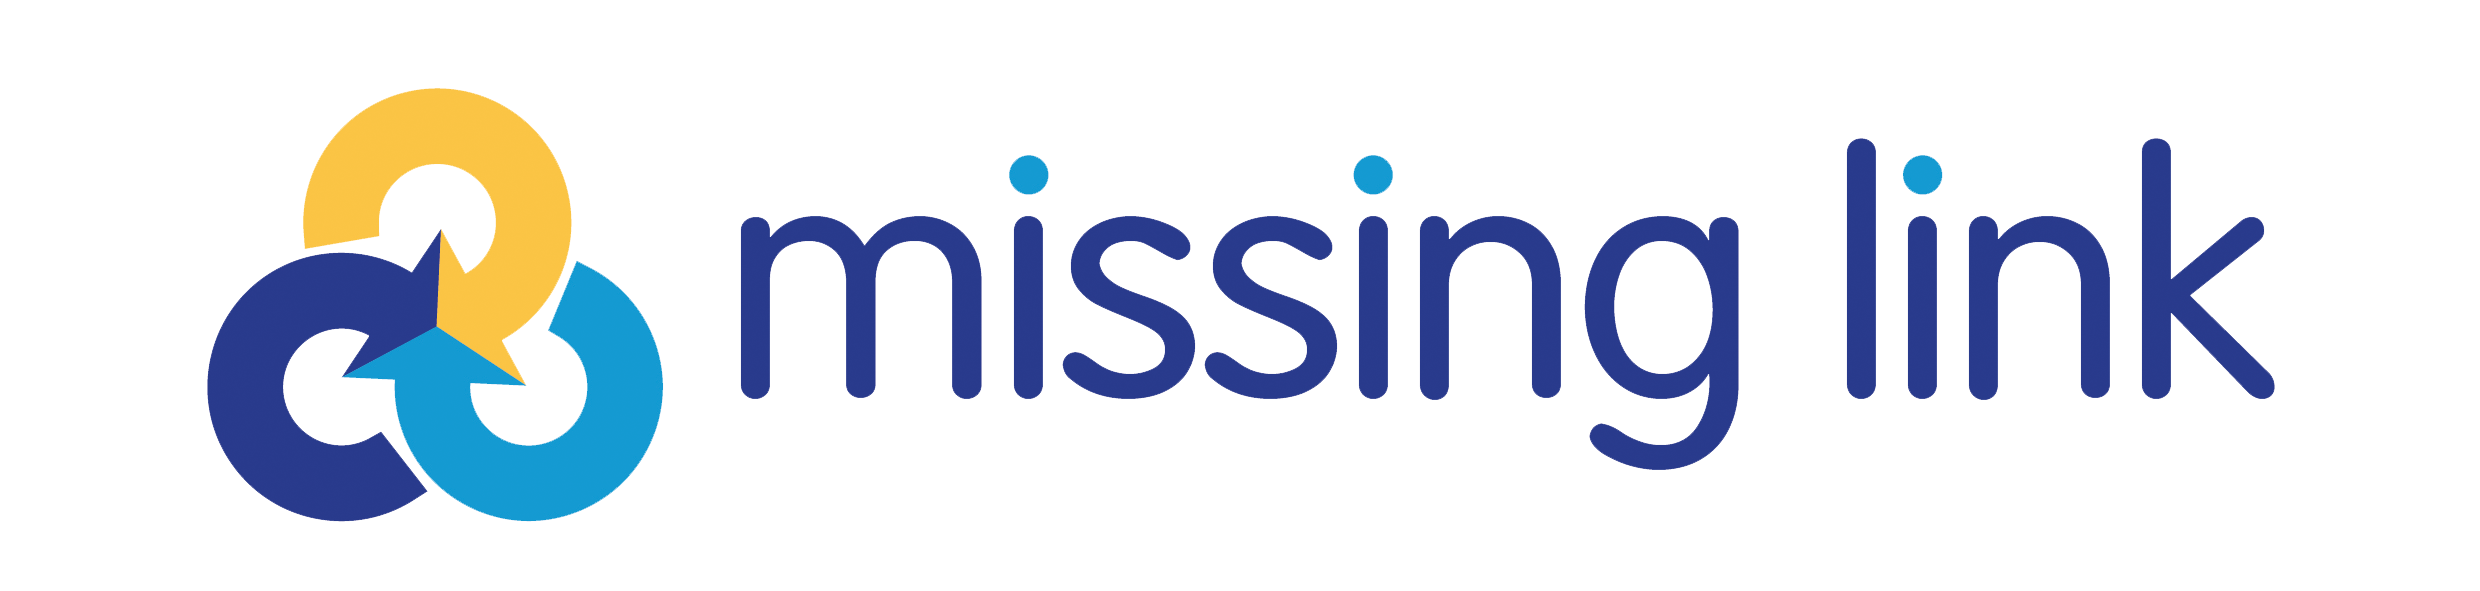 missing link logo